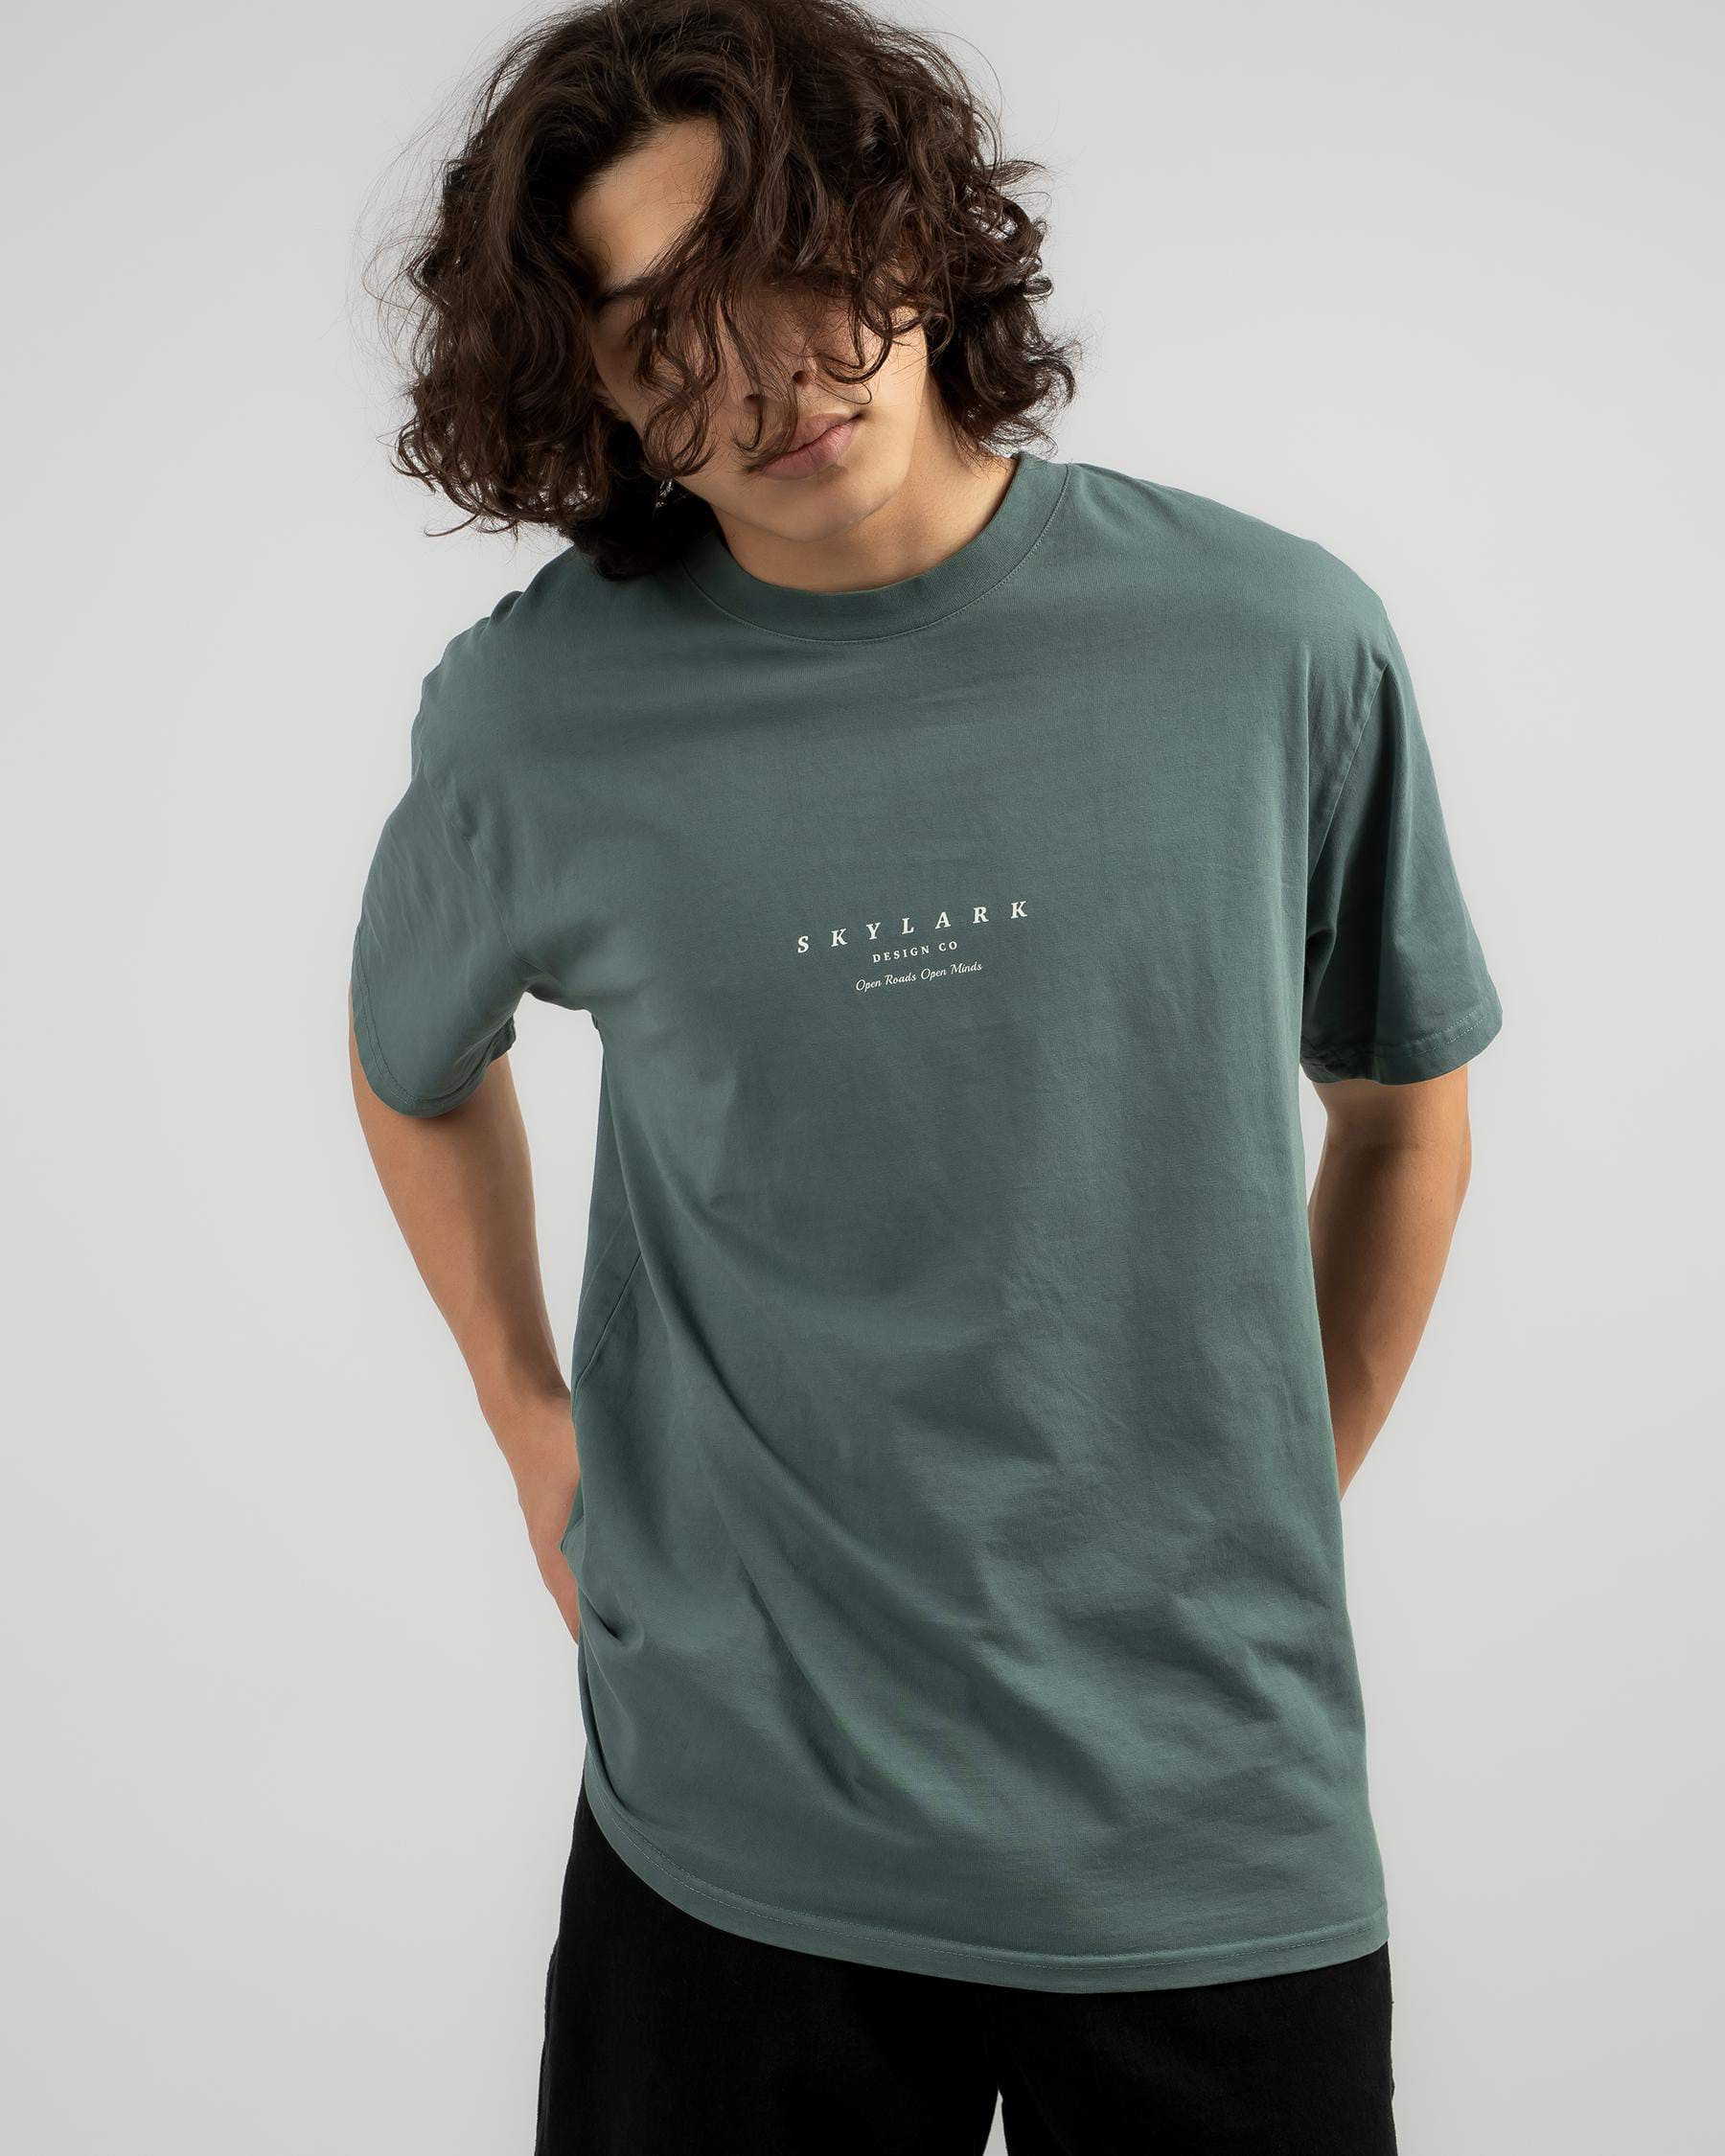 Skylark Substitute T-Shirt In Dark Green - Fast Shipping & Easy Returns ...